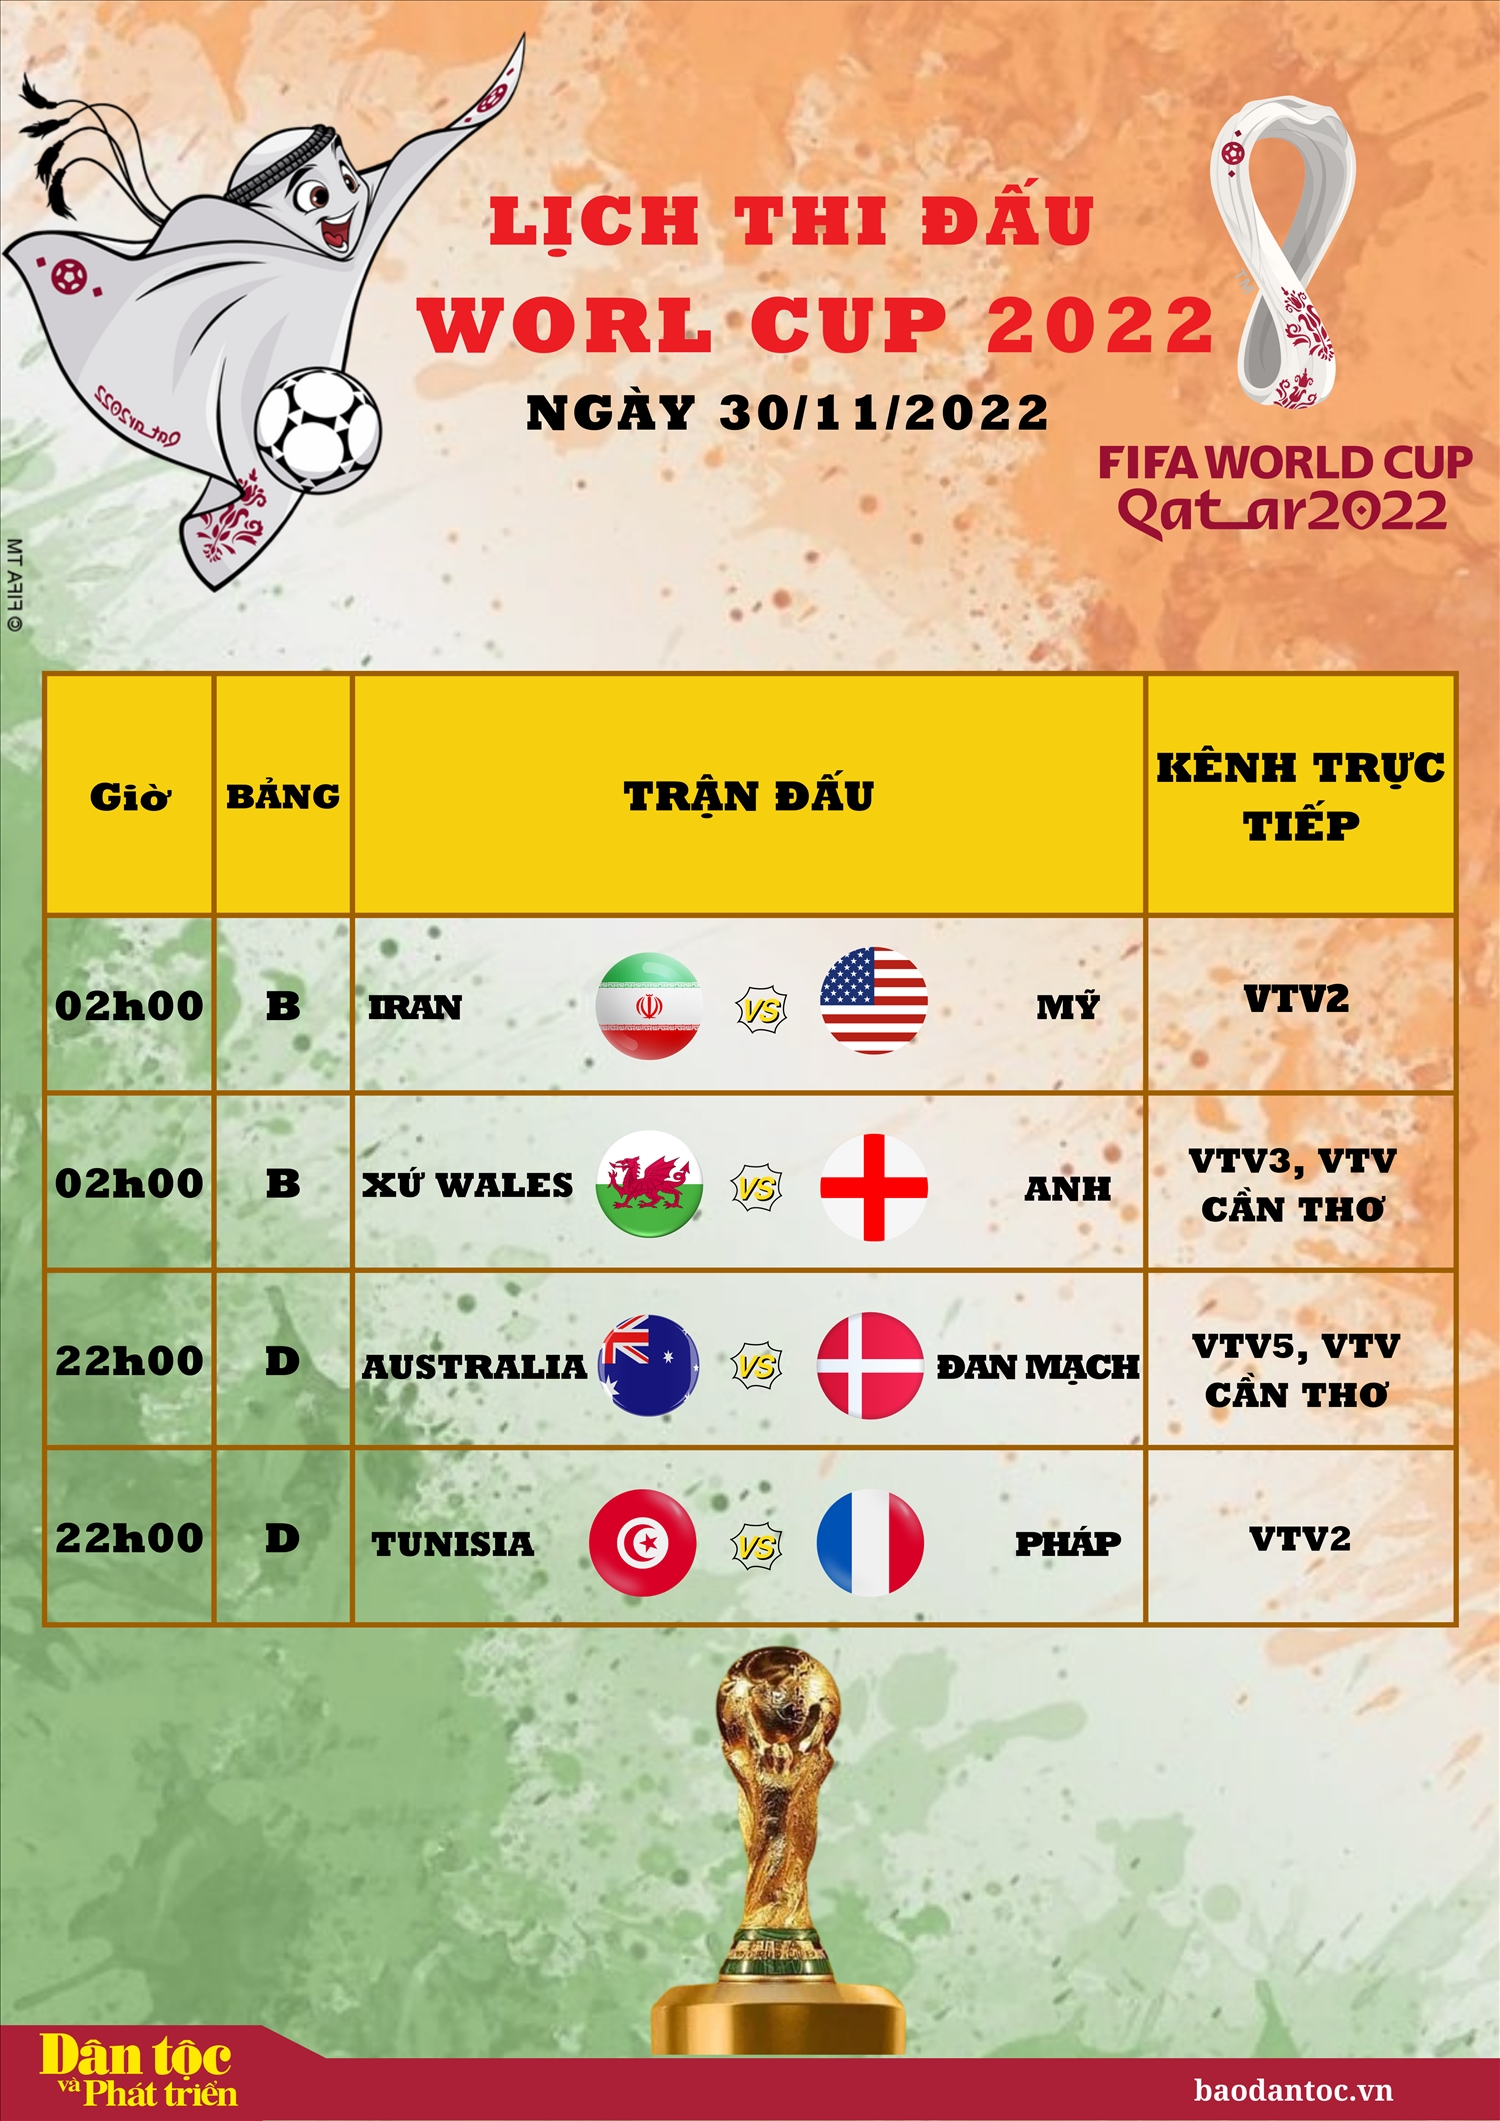 Lịch thi đấu World Cup 2022 ngày 30/11/2022